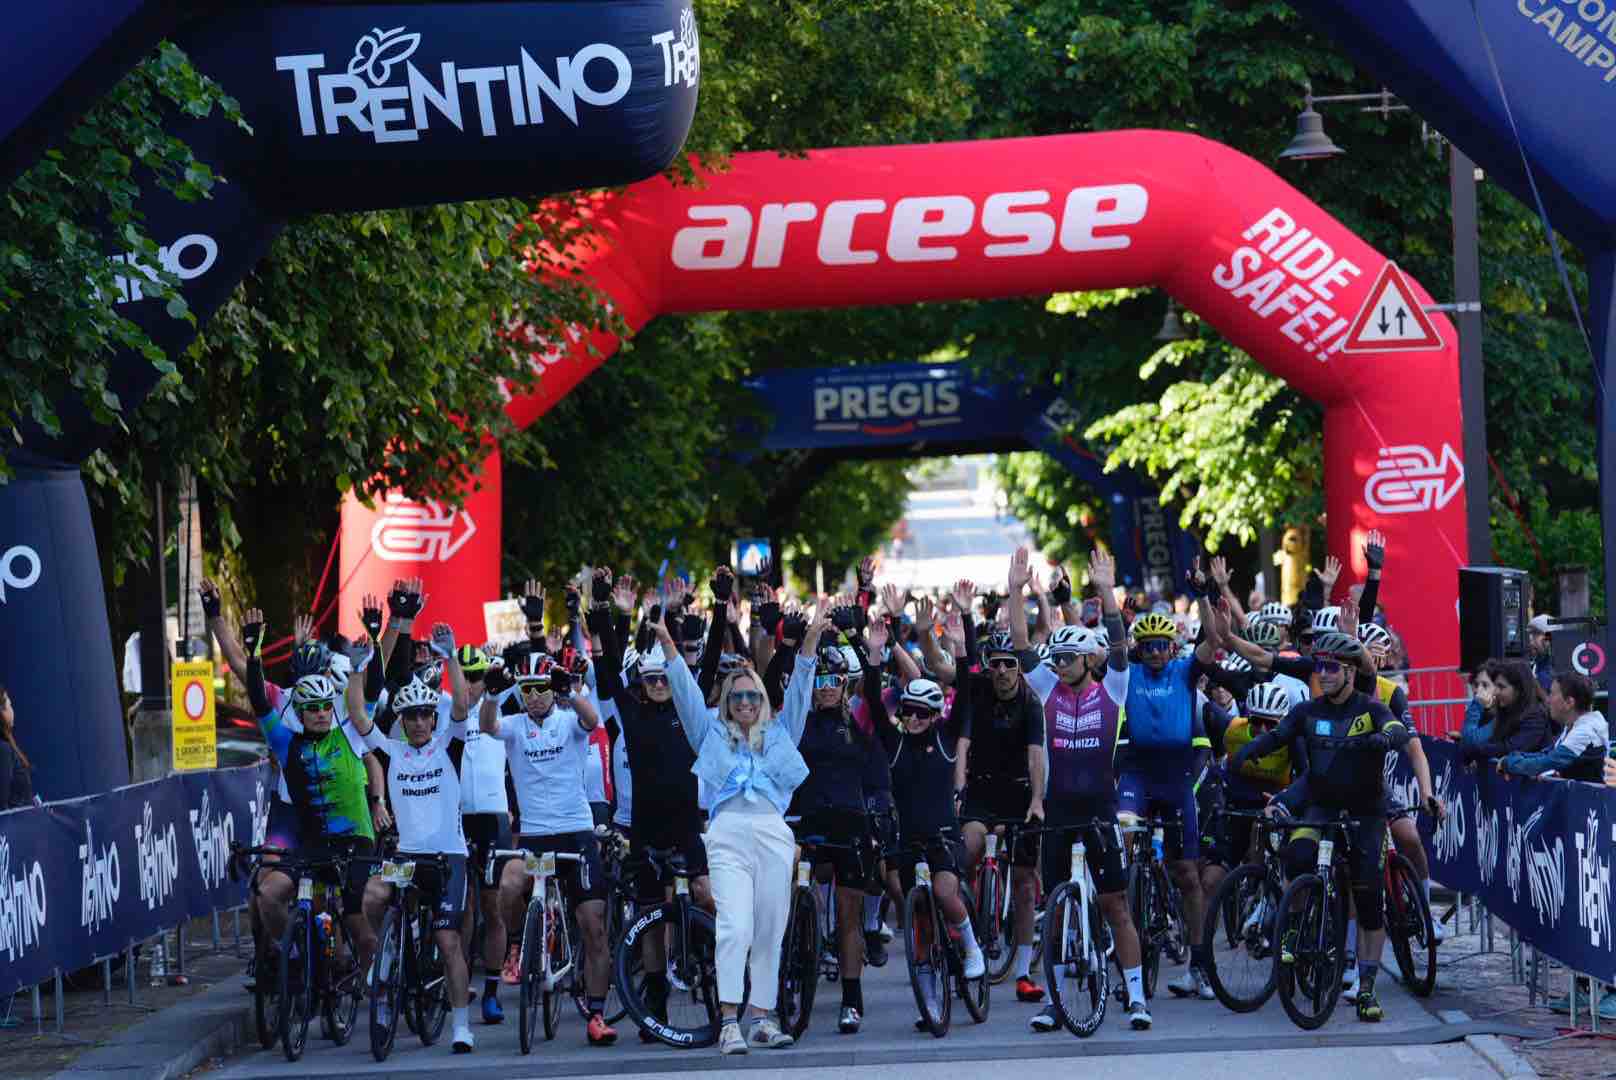 CAMPIGLIO - Pinzolo, festa anche per la Top Dolomites Cycling: i risultati